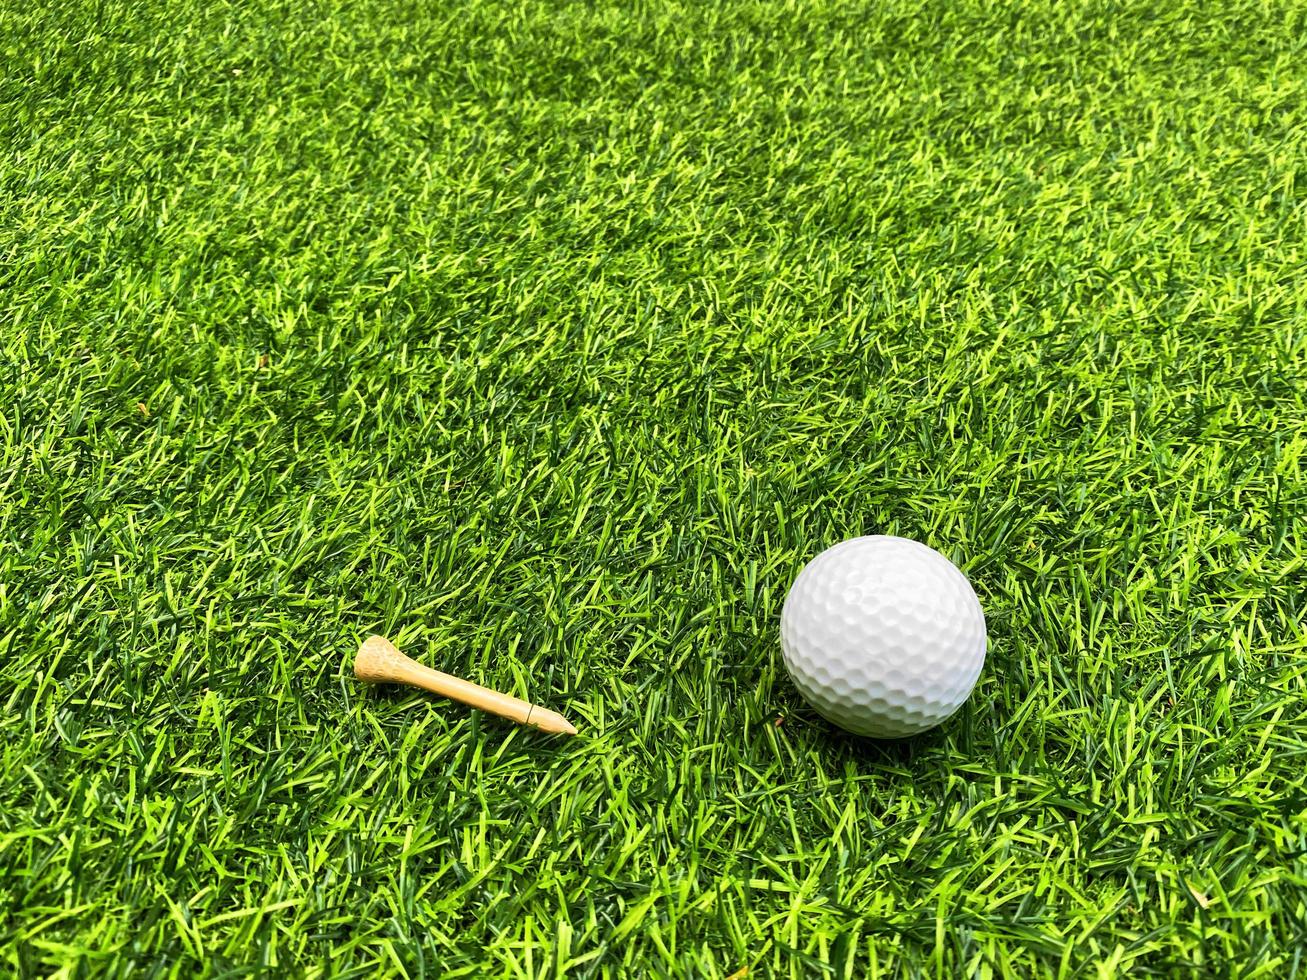 balle de golf en gros plan sur l'herbe verte sur un magnifique paysage flou de fond de golf. concept de sport international qui s'appuie sur des compétences de précision pour la relaxation de la santé. photo